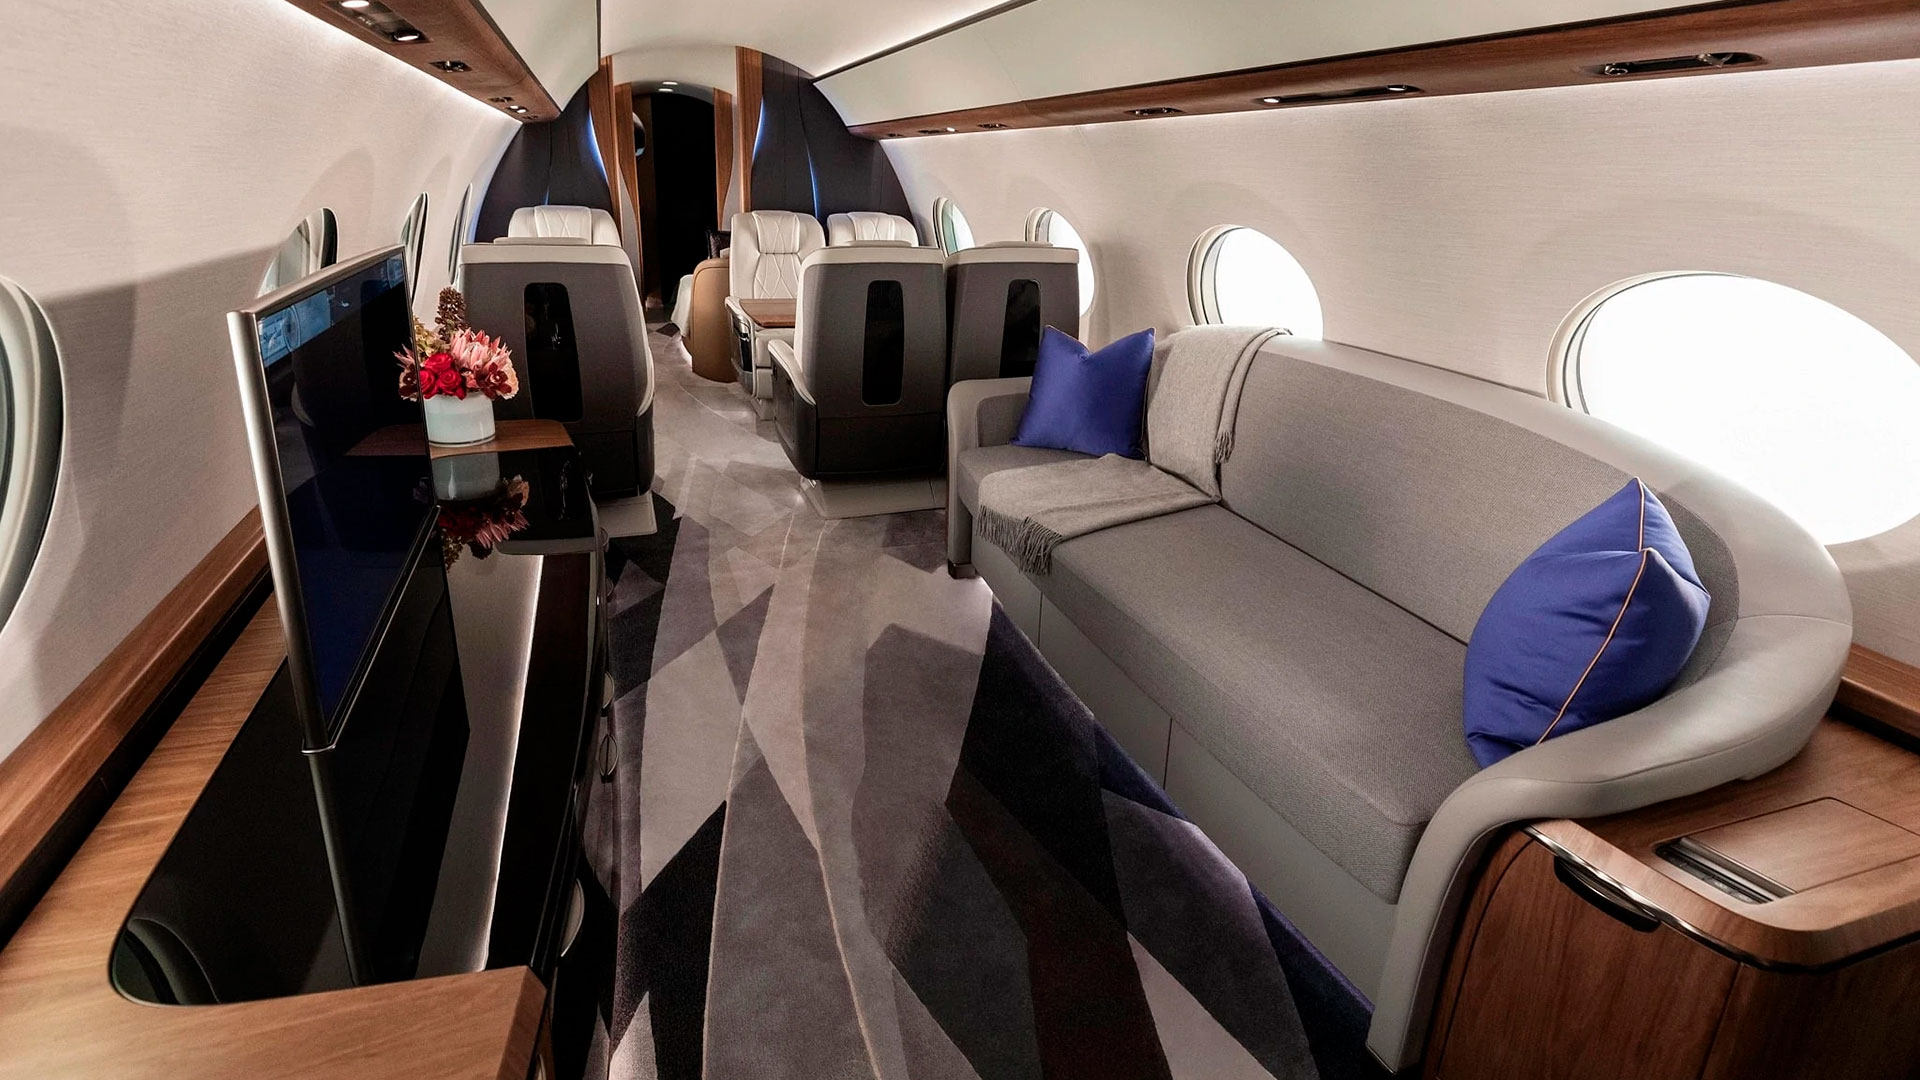 El moderno avión cuenta con hasta 5 salones configurables al gusto del cliente